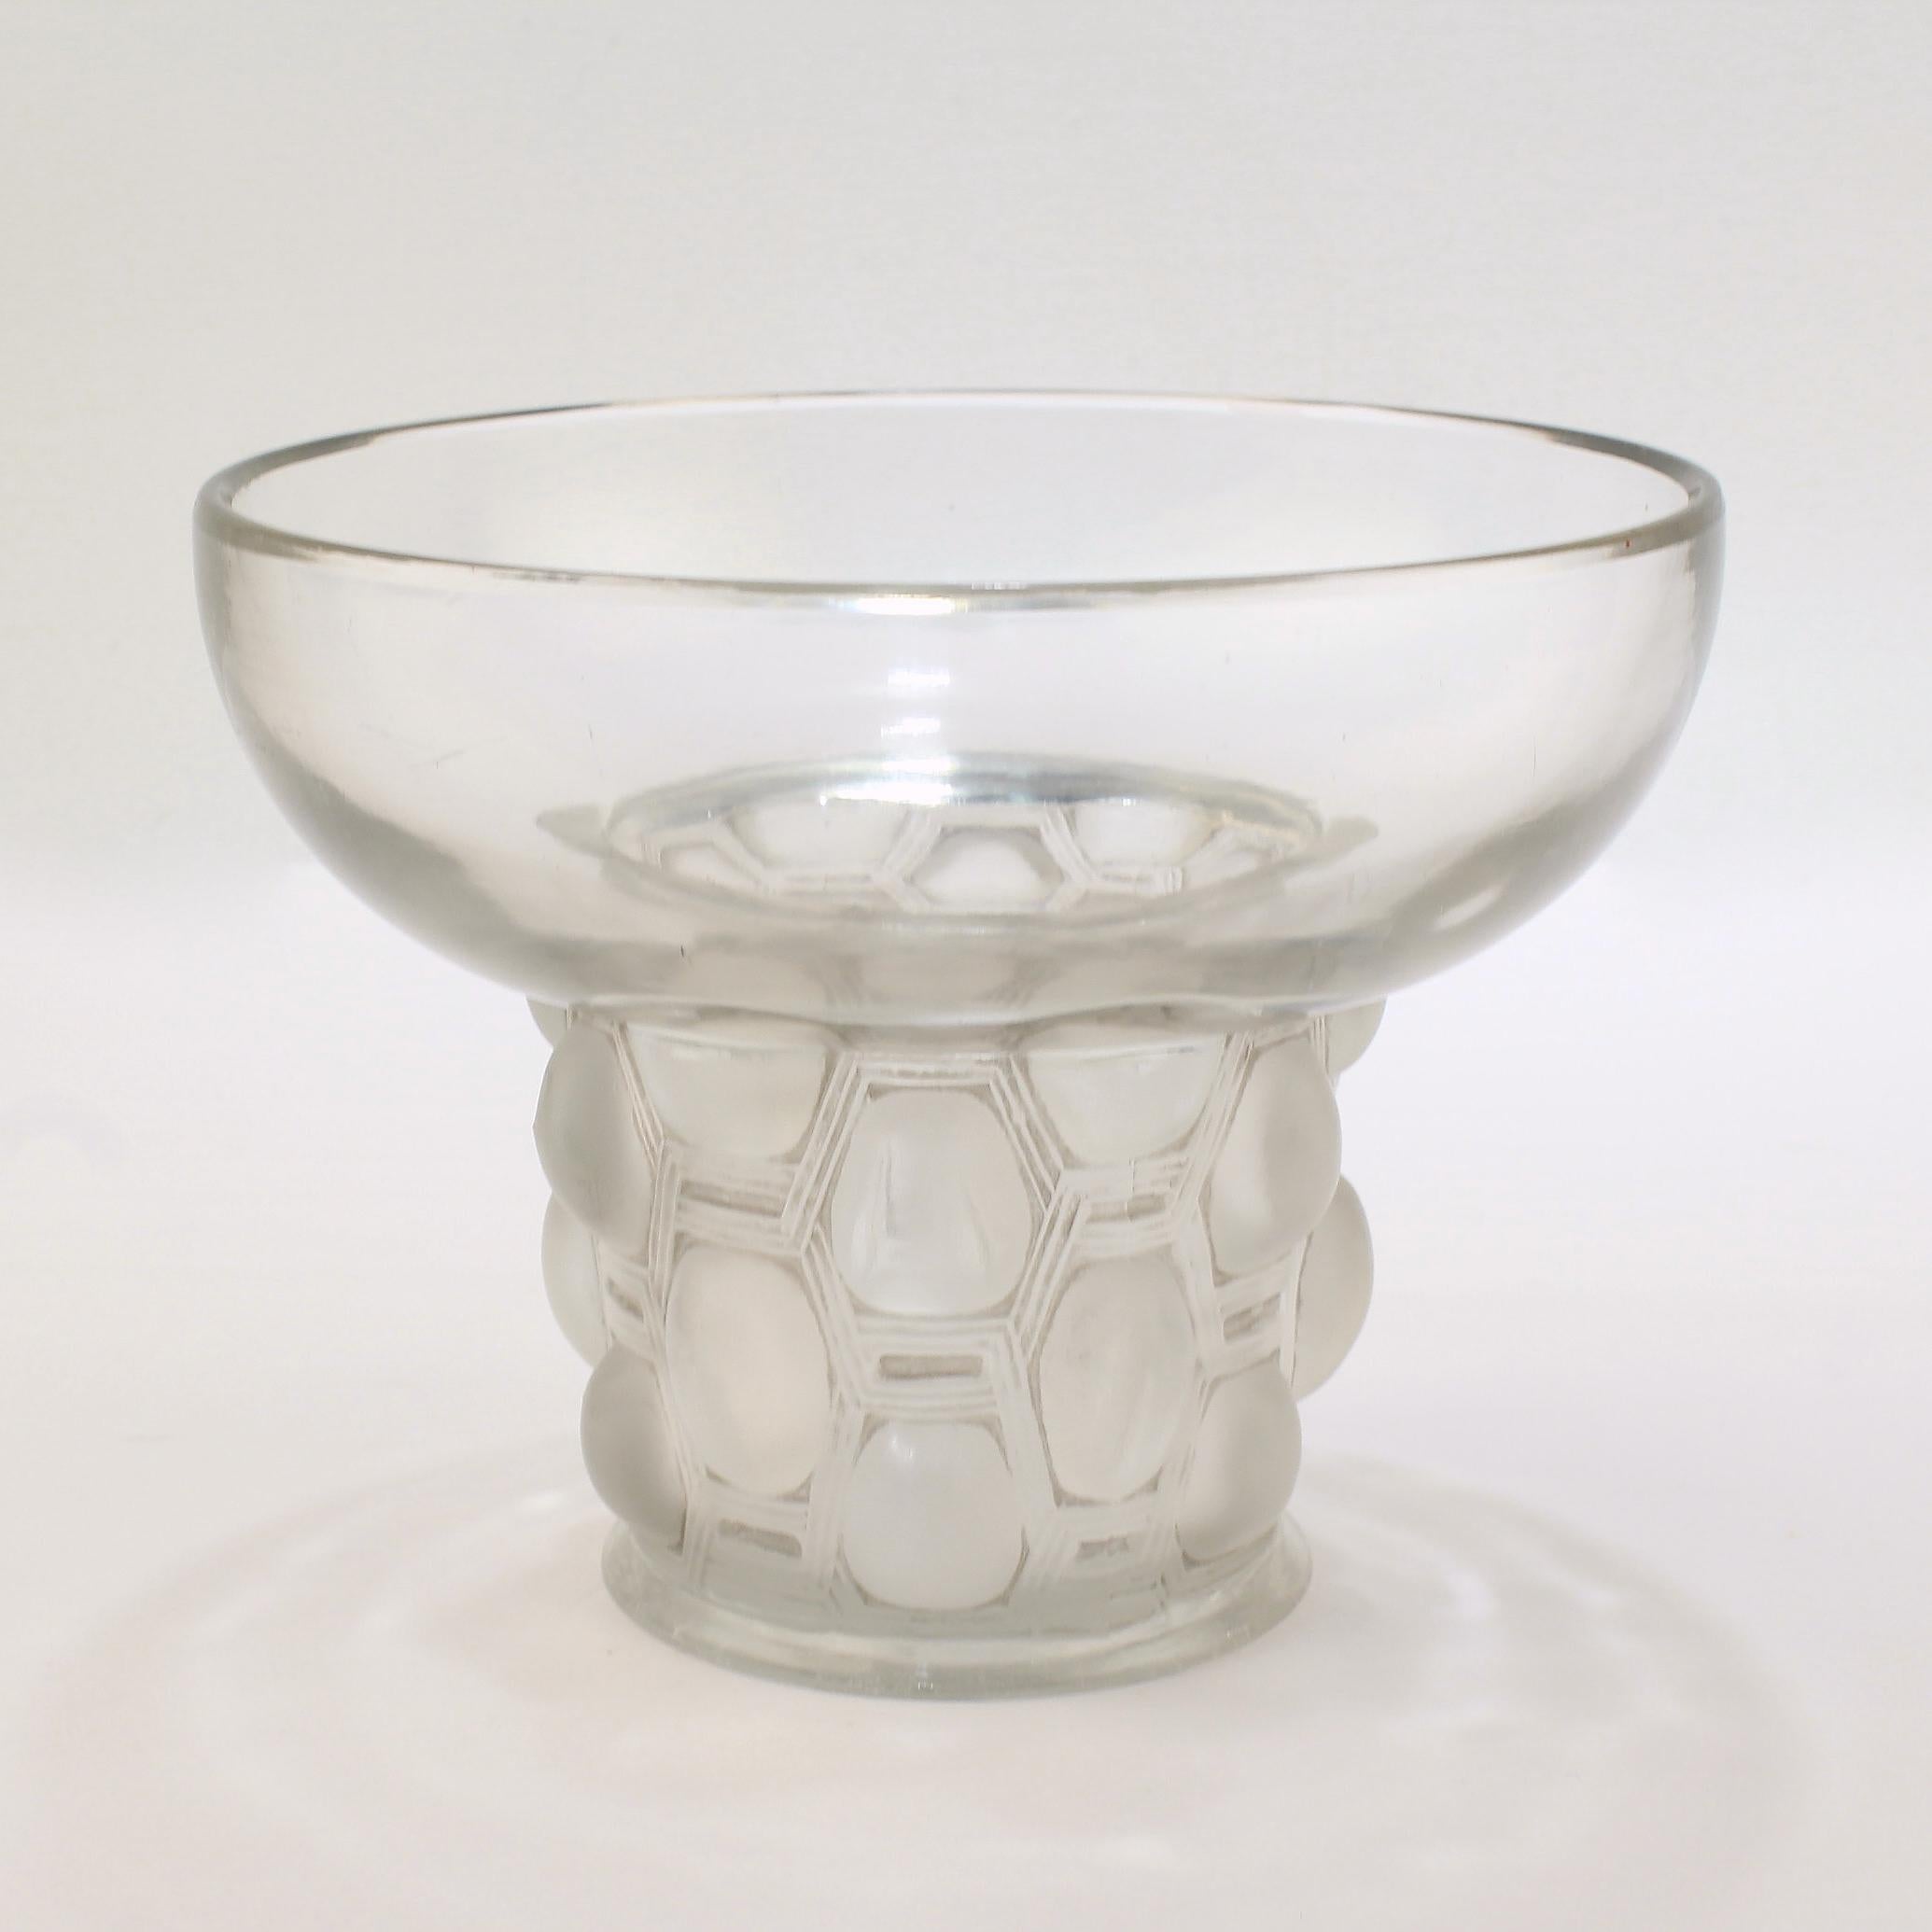 Signed Rene Lalique Art Deco Period Beautreillis Art Glass Vase 1